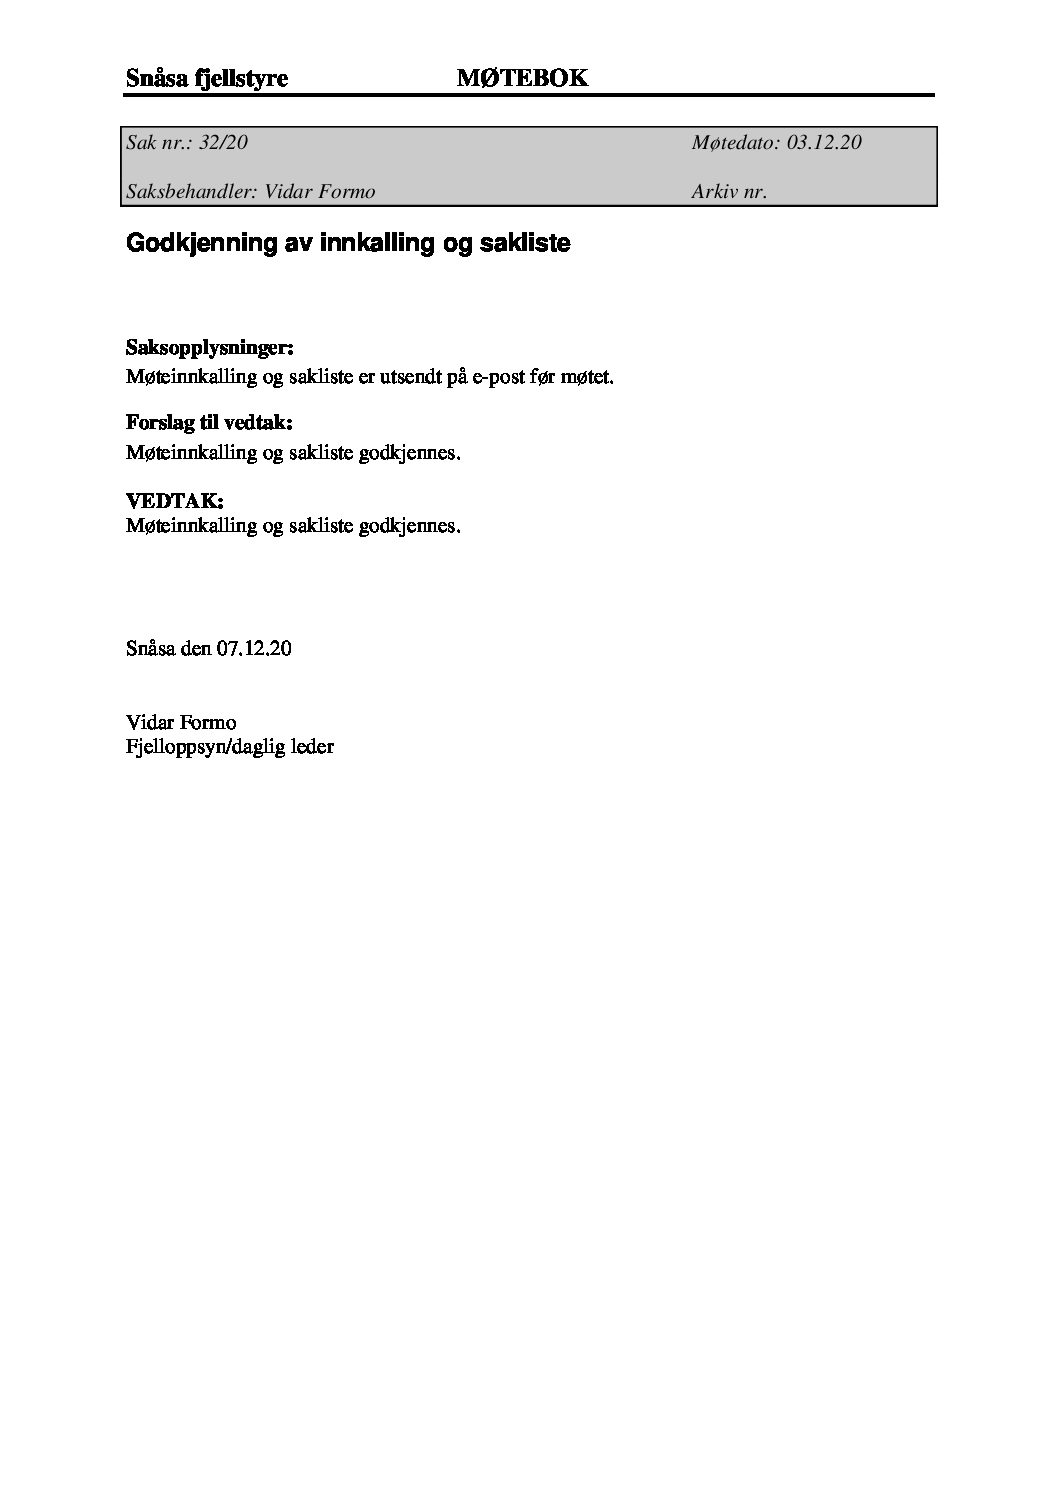 styremote-03-12-2020-pdf.jpg